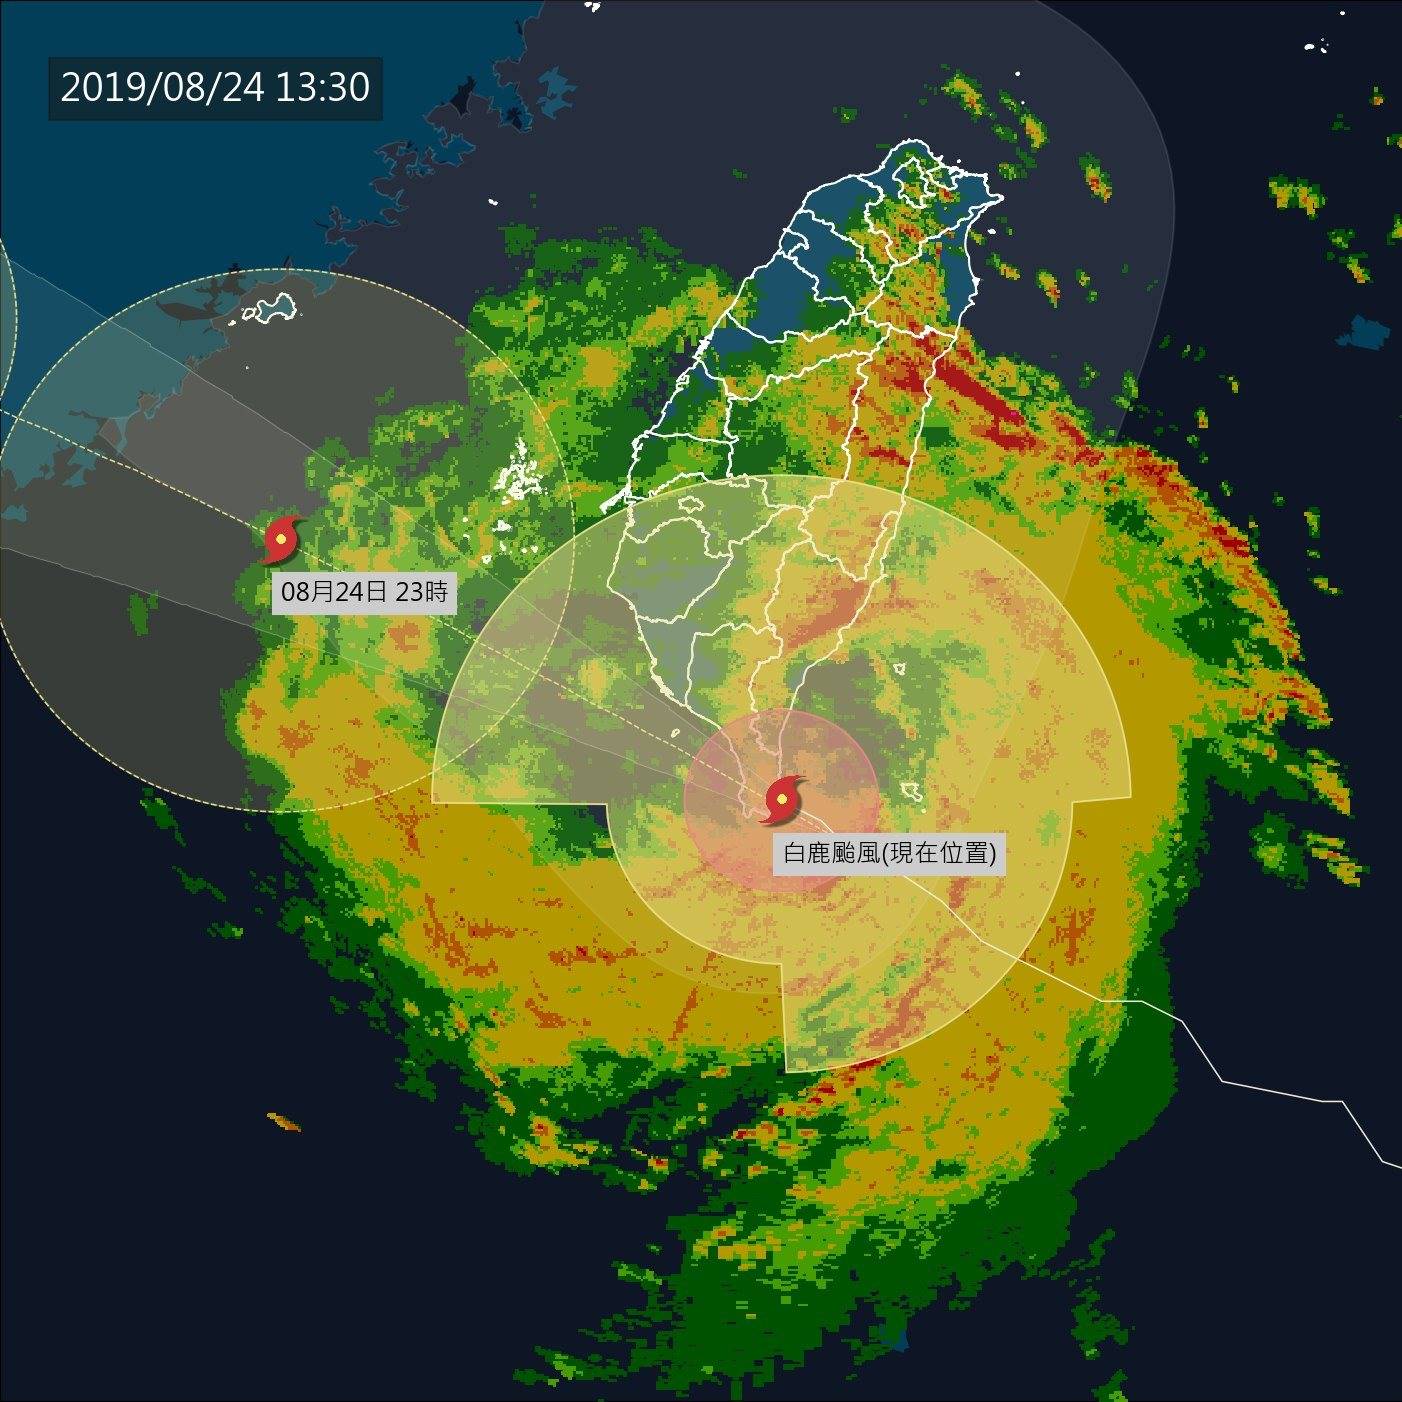 白鹿颱風於2019年8月24日登陸台灣